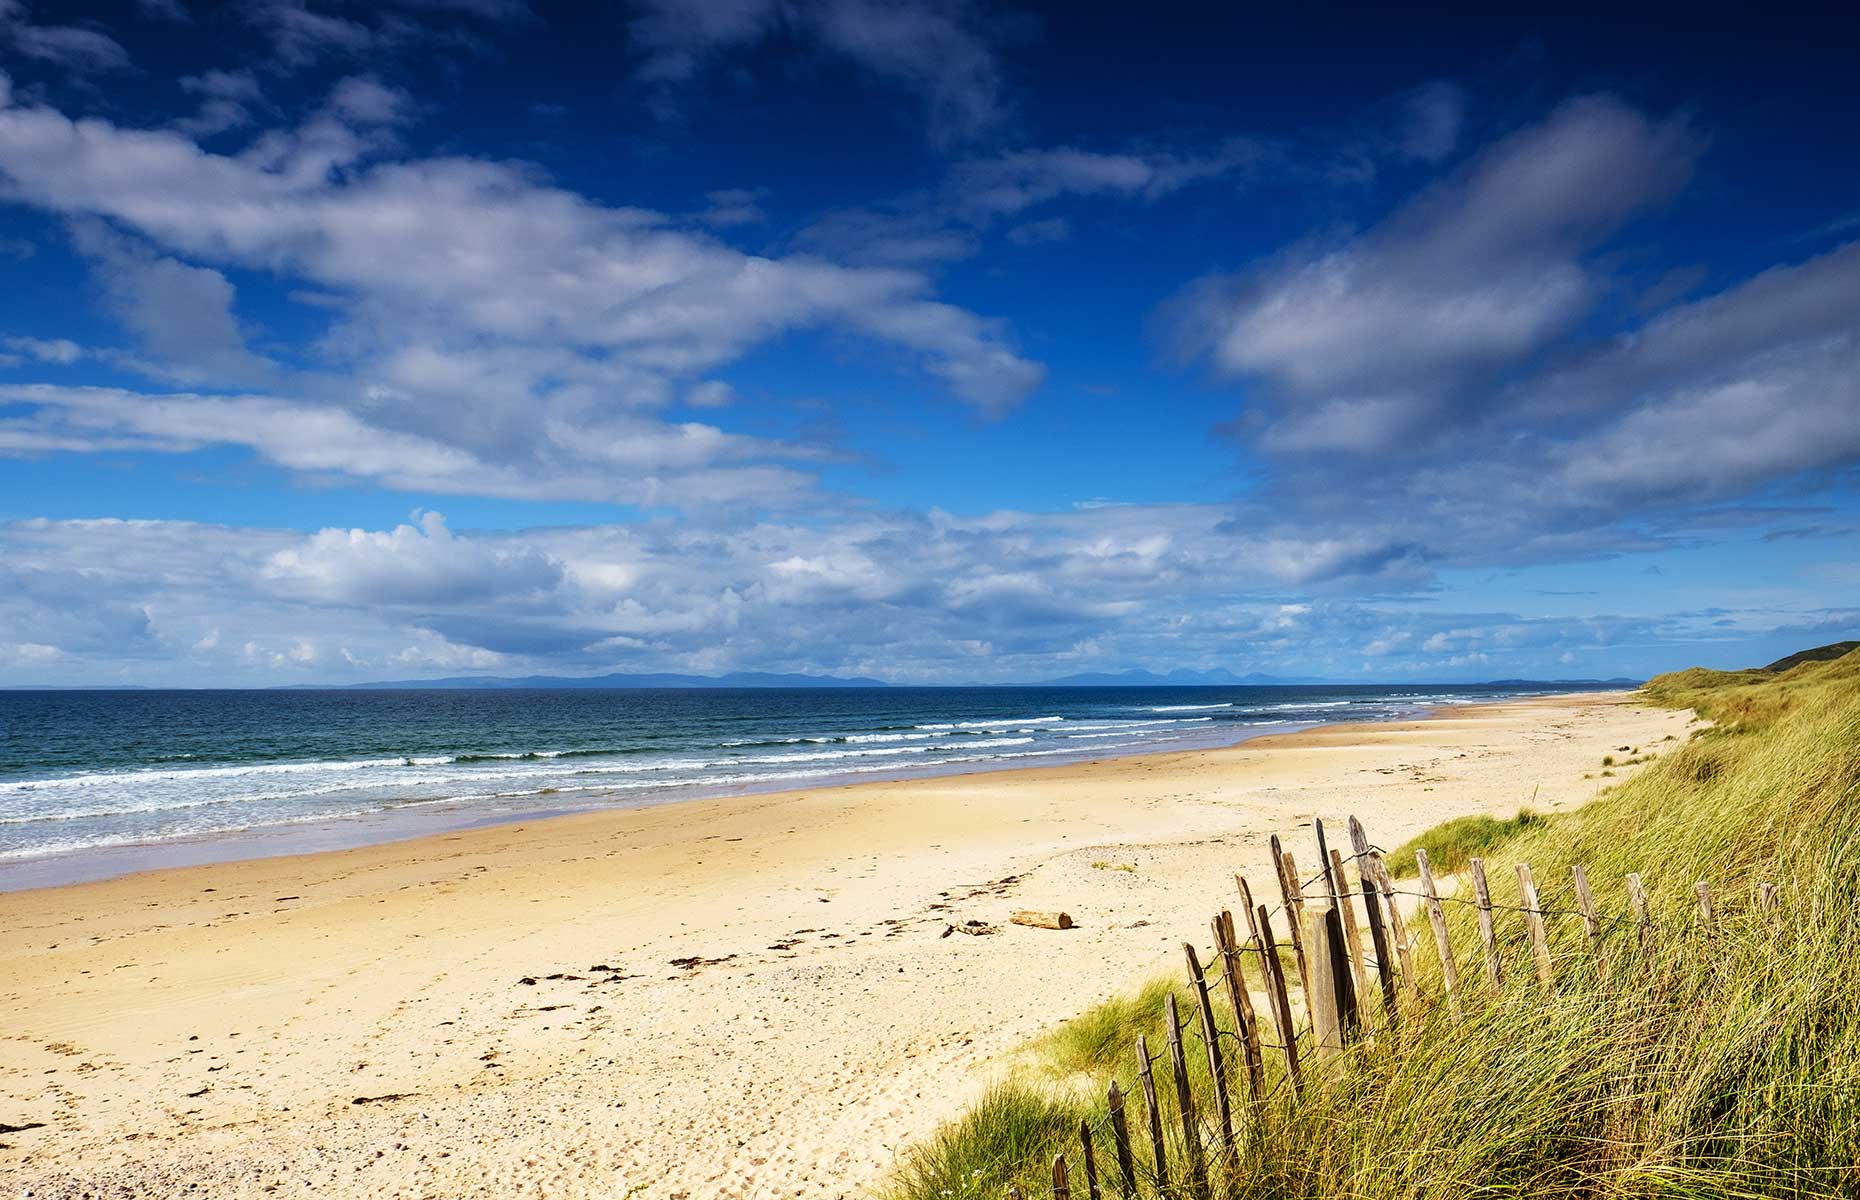 Westport Beach, Scotland (Image: Shaun Barr/Shutterstock)